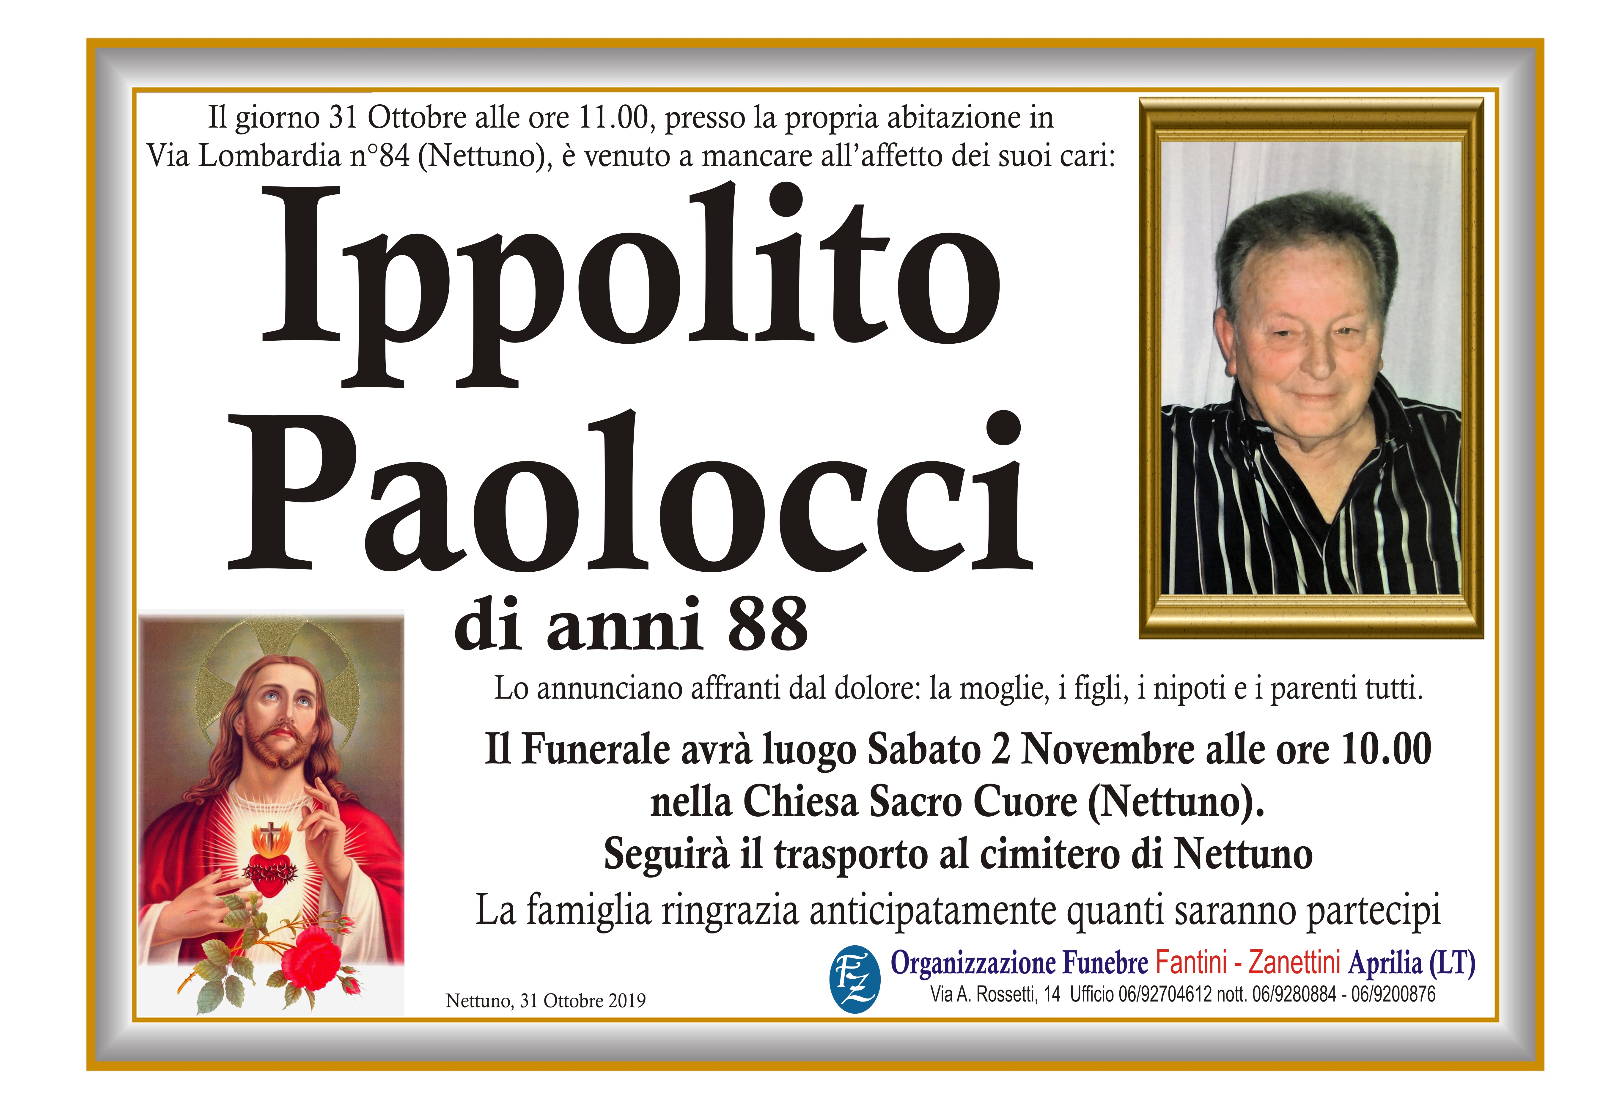 Ippolito Paolocci